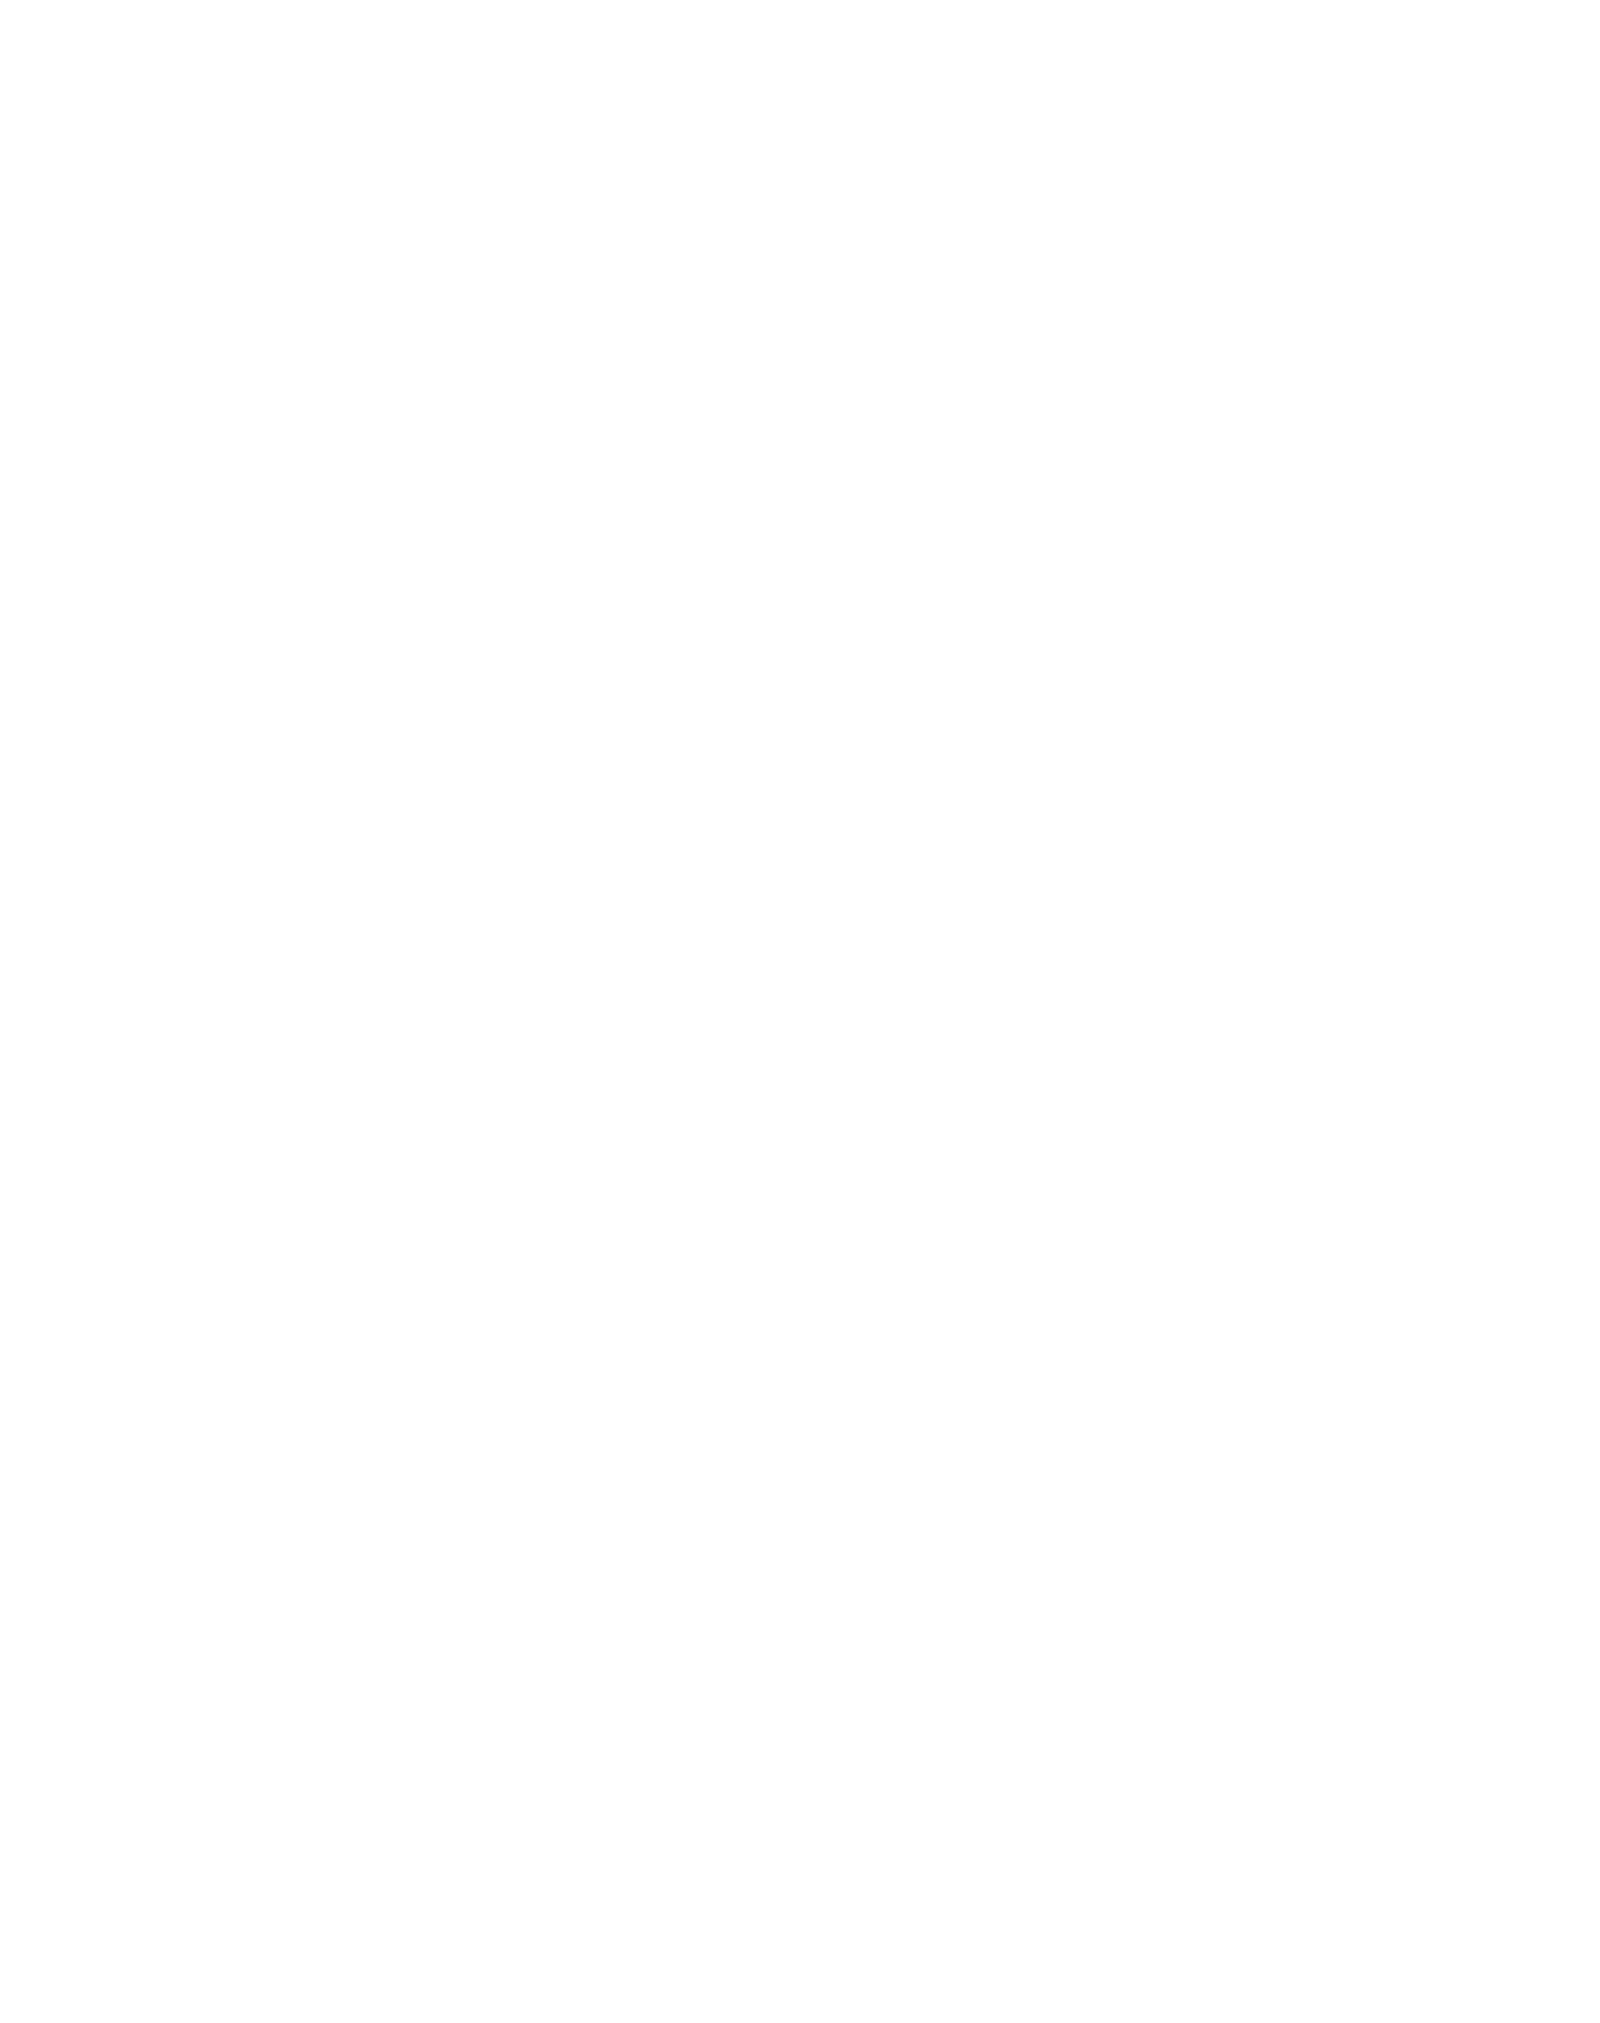 Assassins Creed Unity logo Image Transparente